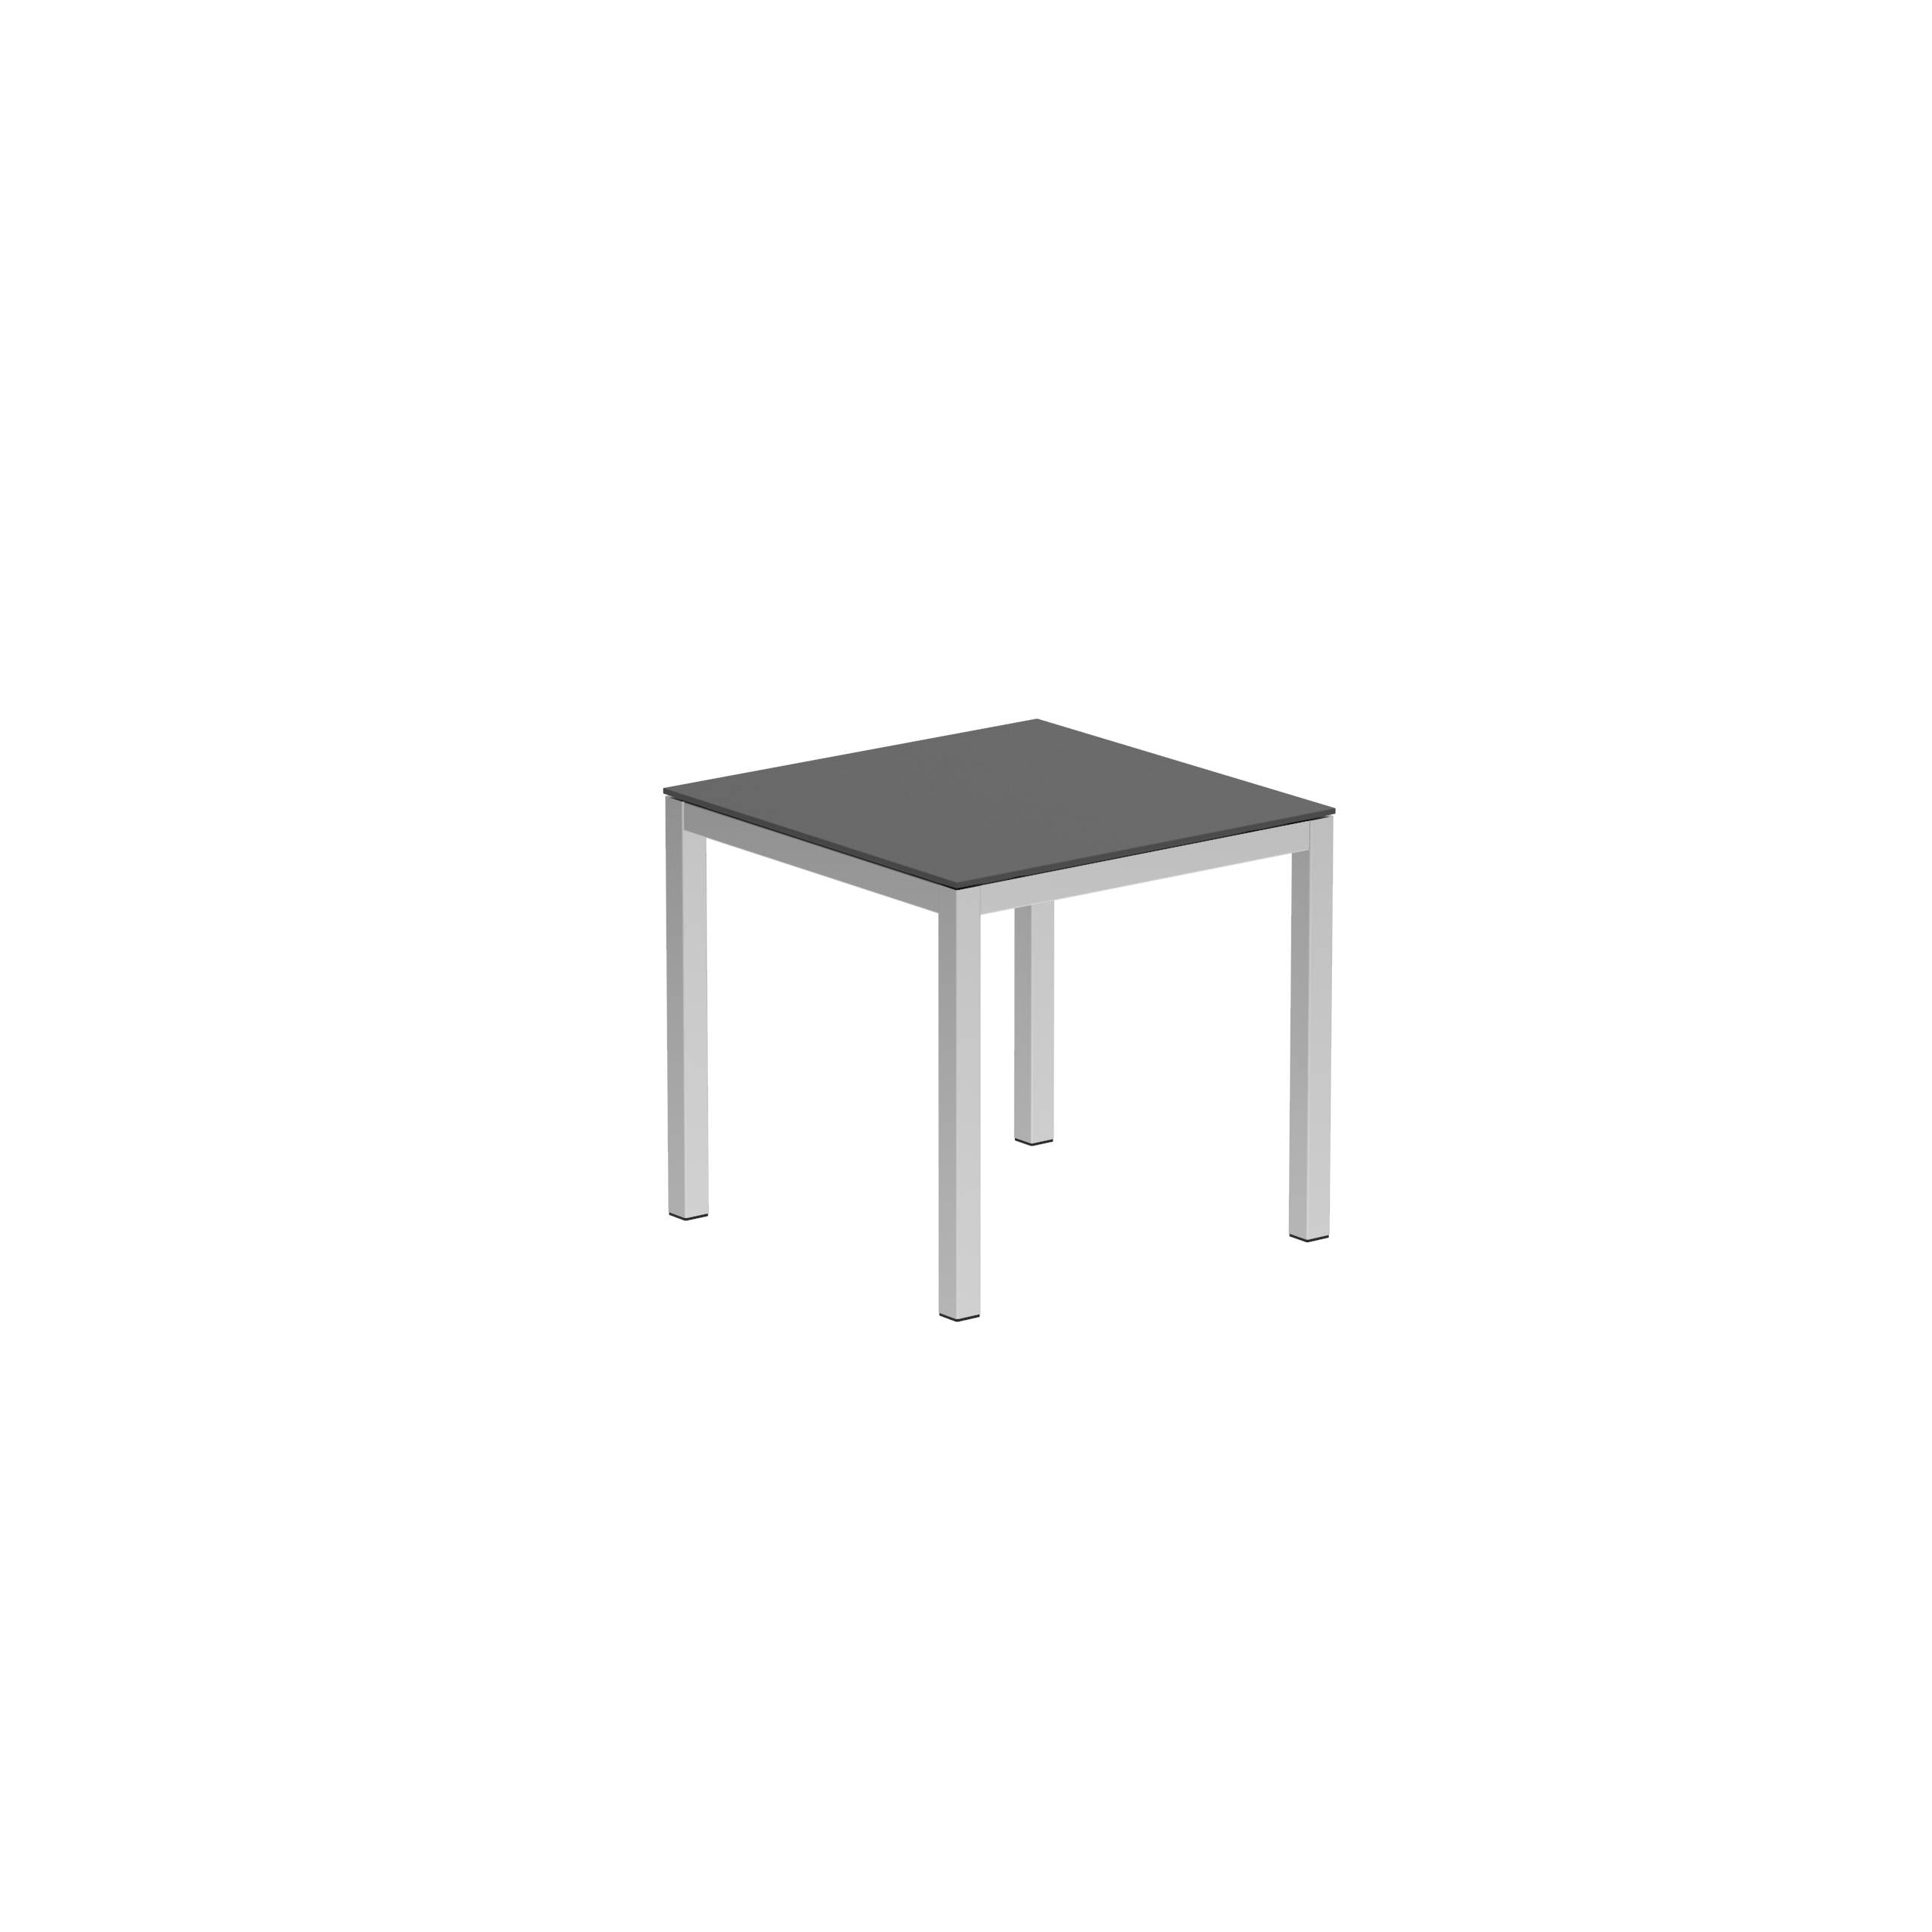 Taboela Table 80x80cm Ep + Ceramic Top Black